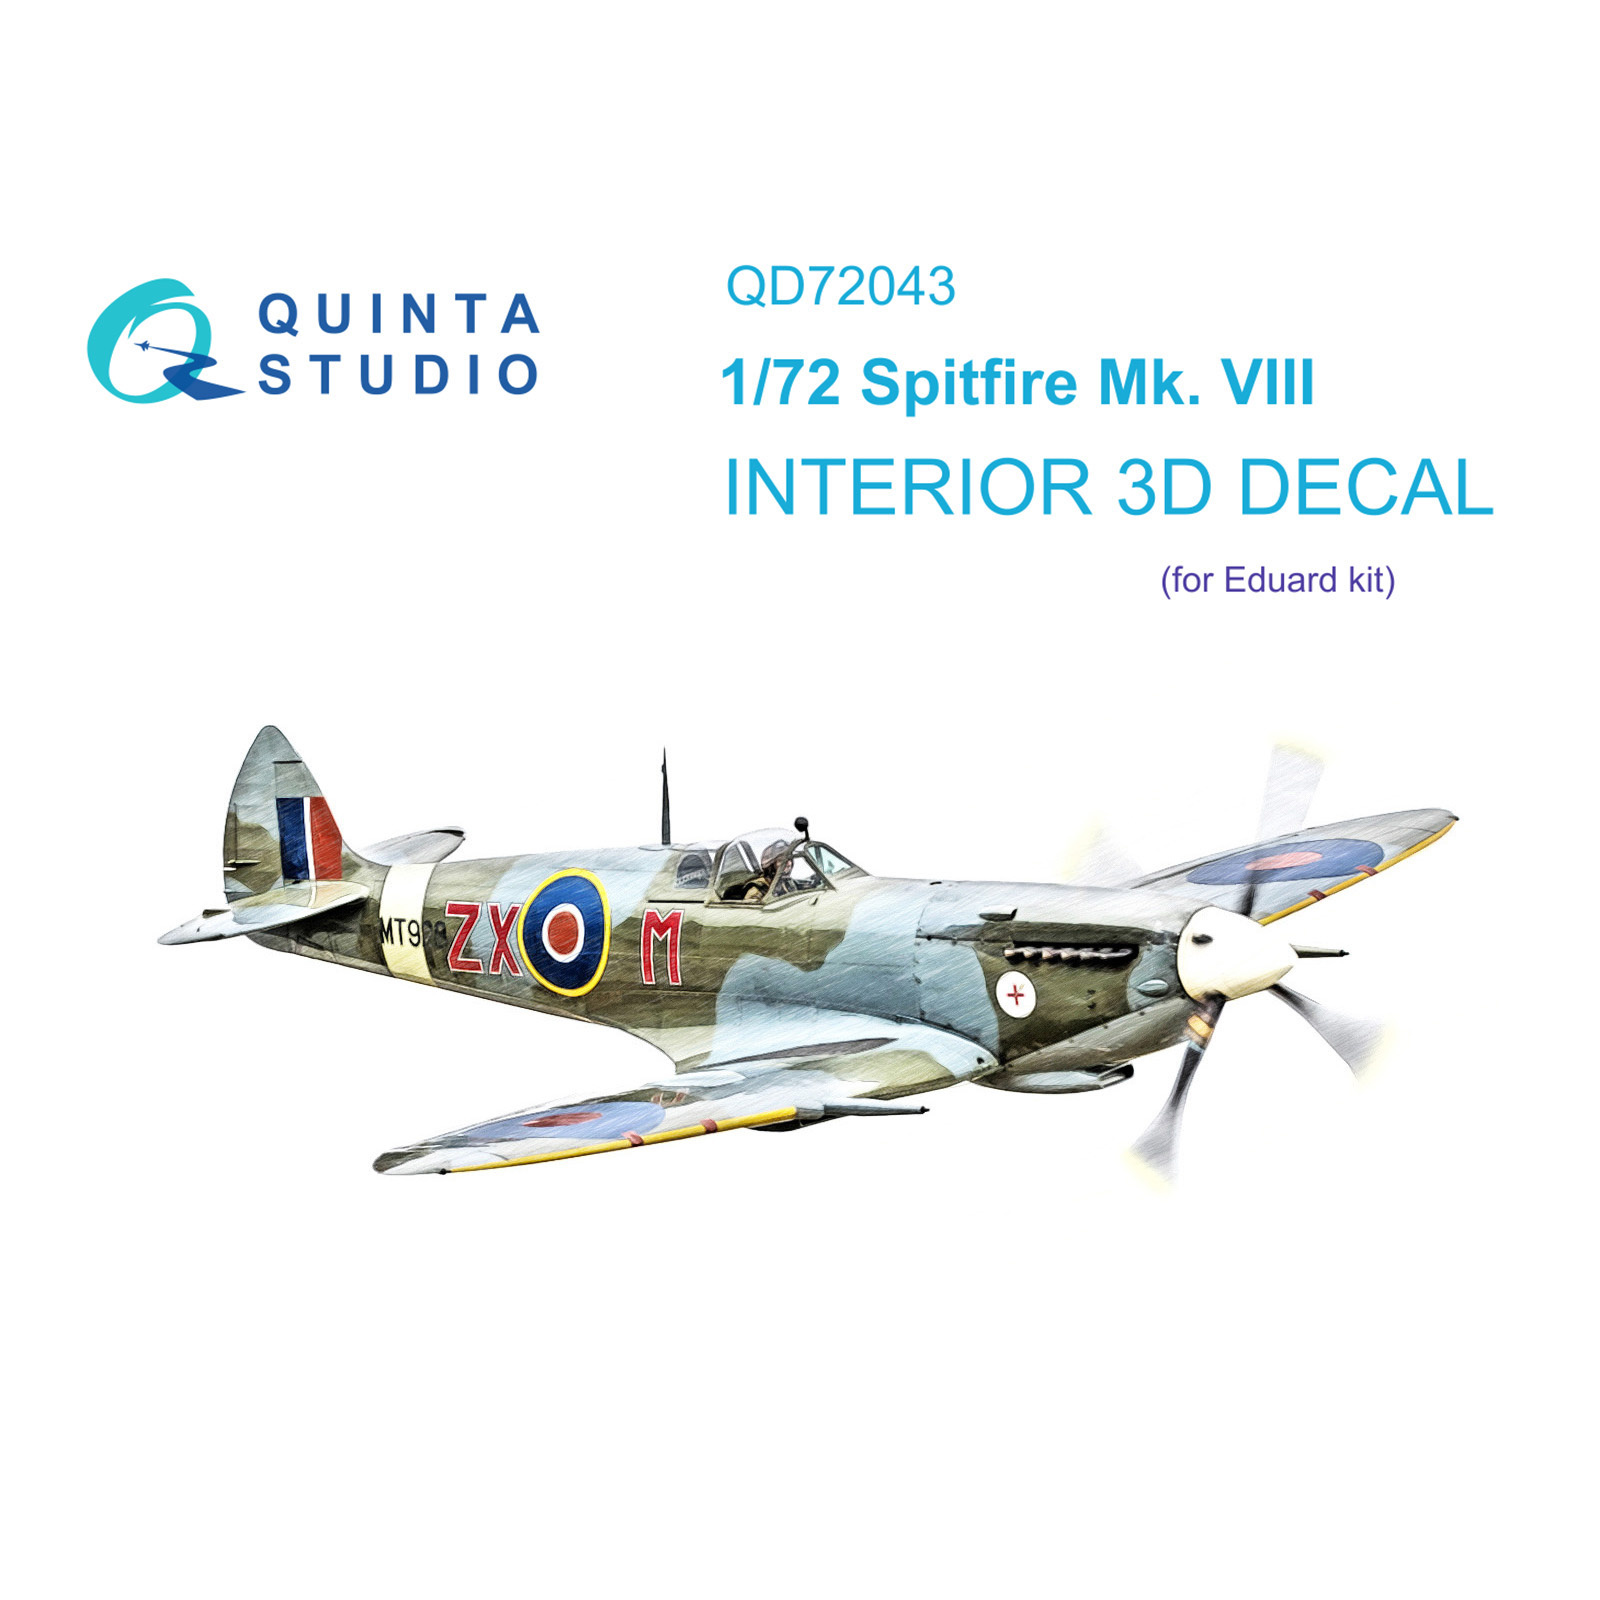 QD72043 Quinta Studio 1/72 3D Cabin Interior Decal Spitfire Mk.VIII (Eduard)